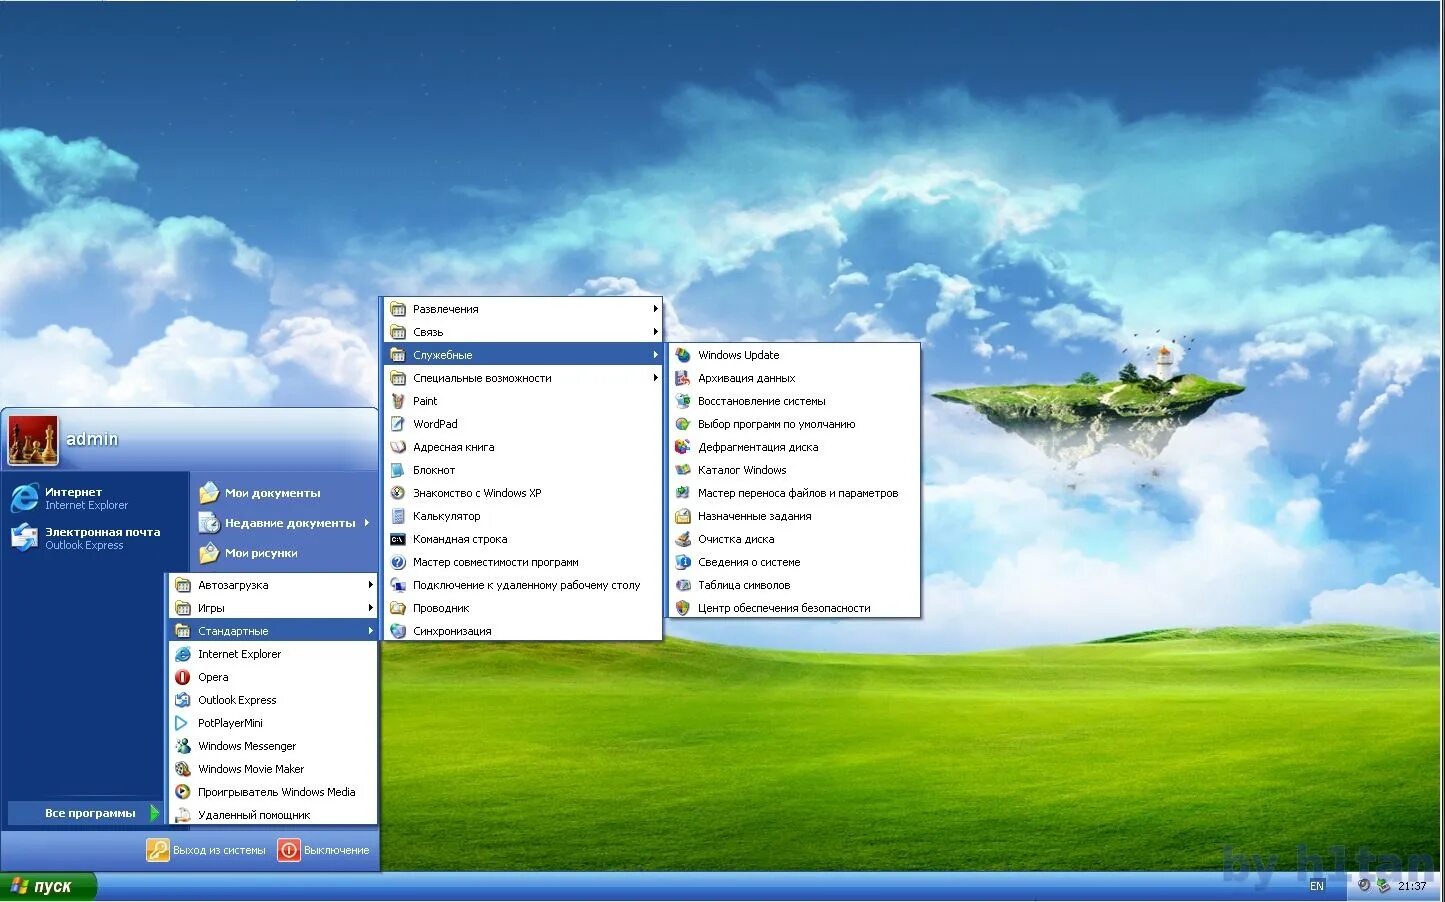 Хр 32 бит. Виндовс хр 32 бит. Виндовс хр профессионал 32 бит. Windows XP professional sp3 VL. Windows XP 2015.